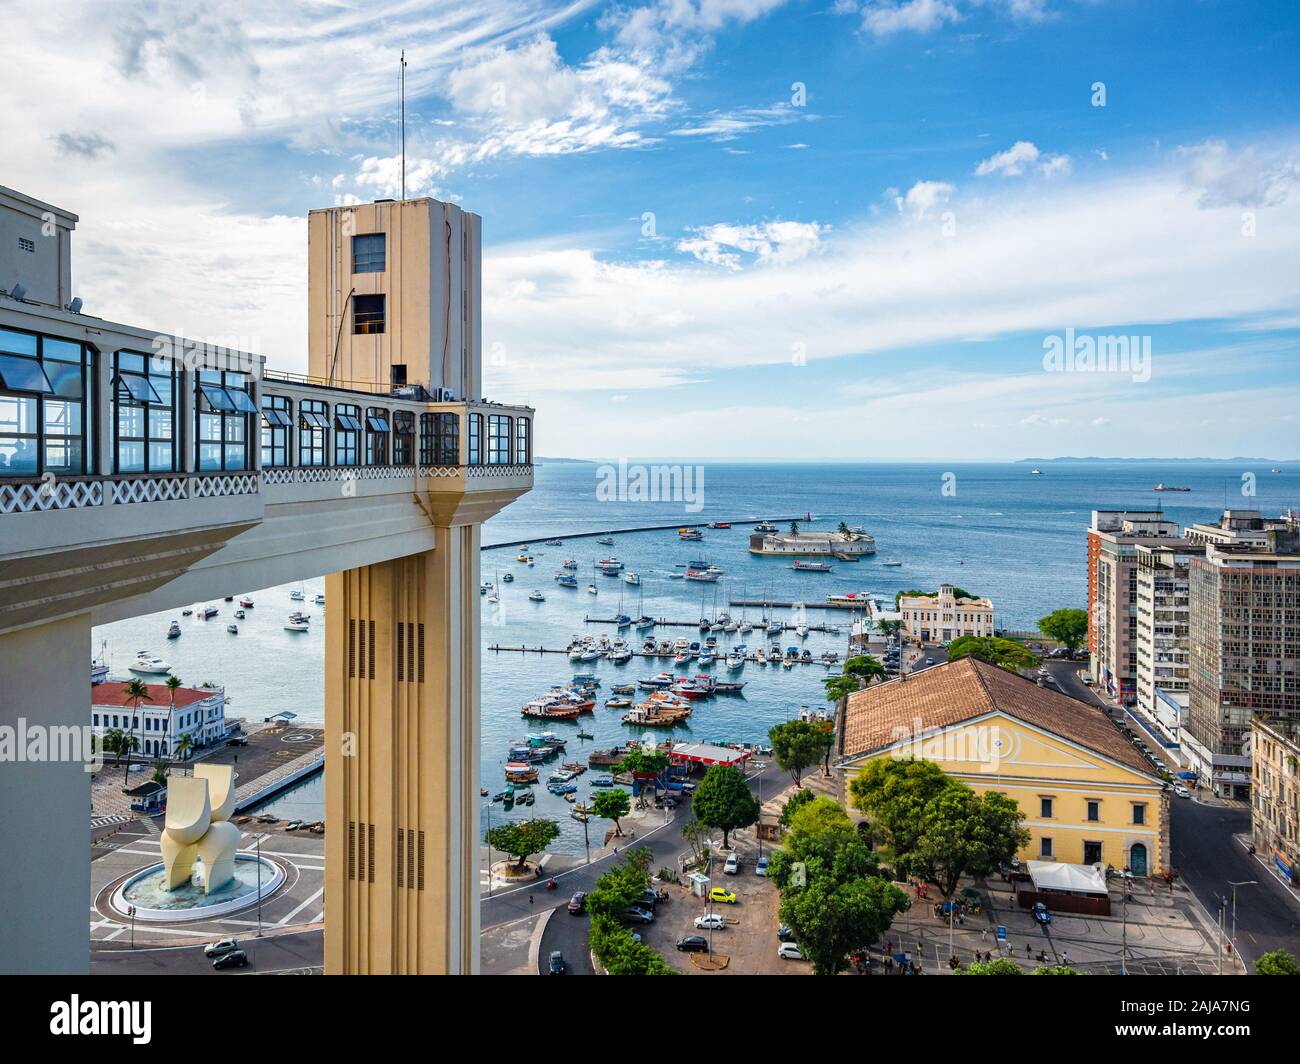 Architectural landmark Lacerda Lift and Bay of All Saints (Portuguese: Baia de Todos os Santos) on a sunny day in Salvador da Bahia, Brazil. Stock Photo